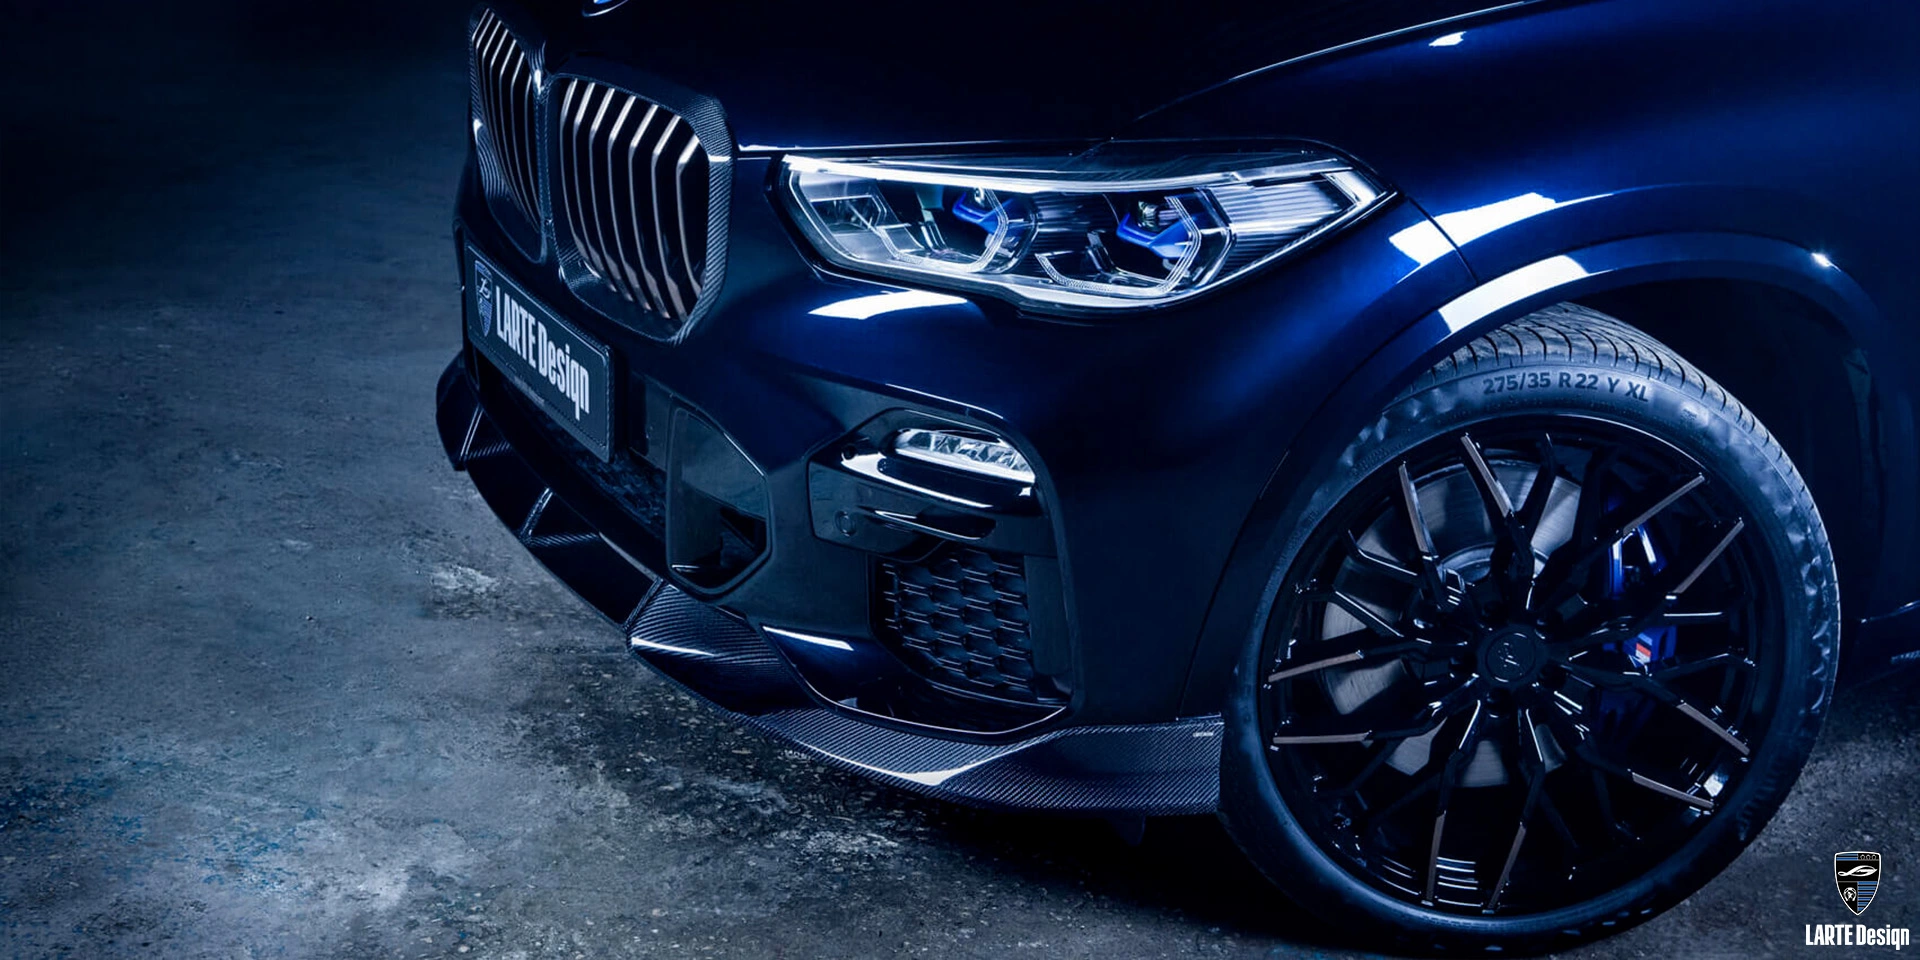 Holen Sie sich einen Frontsplitter aus Kohlefaser für den LARTE Performance BMW X5 M Sport G05 in Tanzanitblau II Metallic